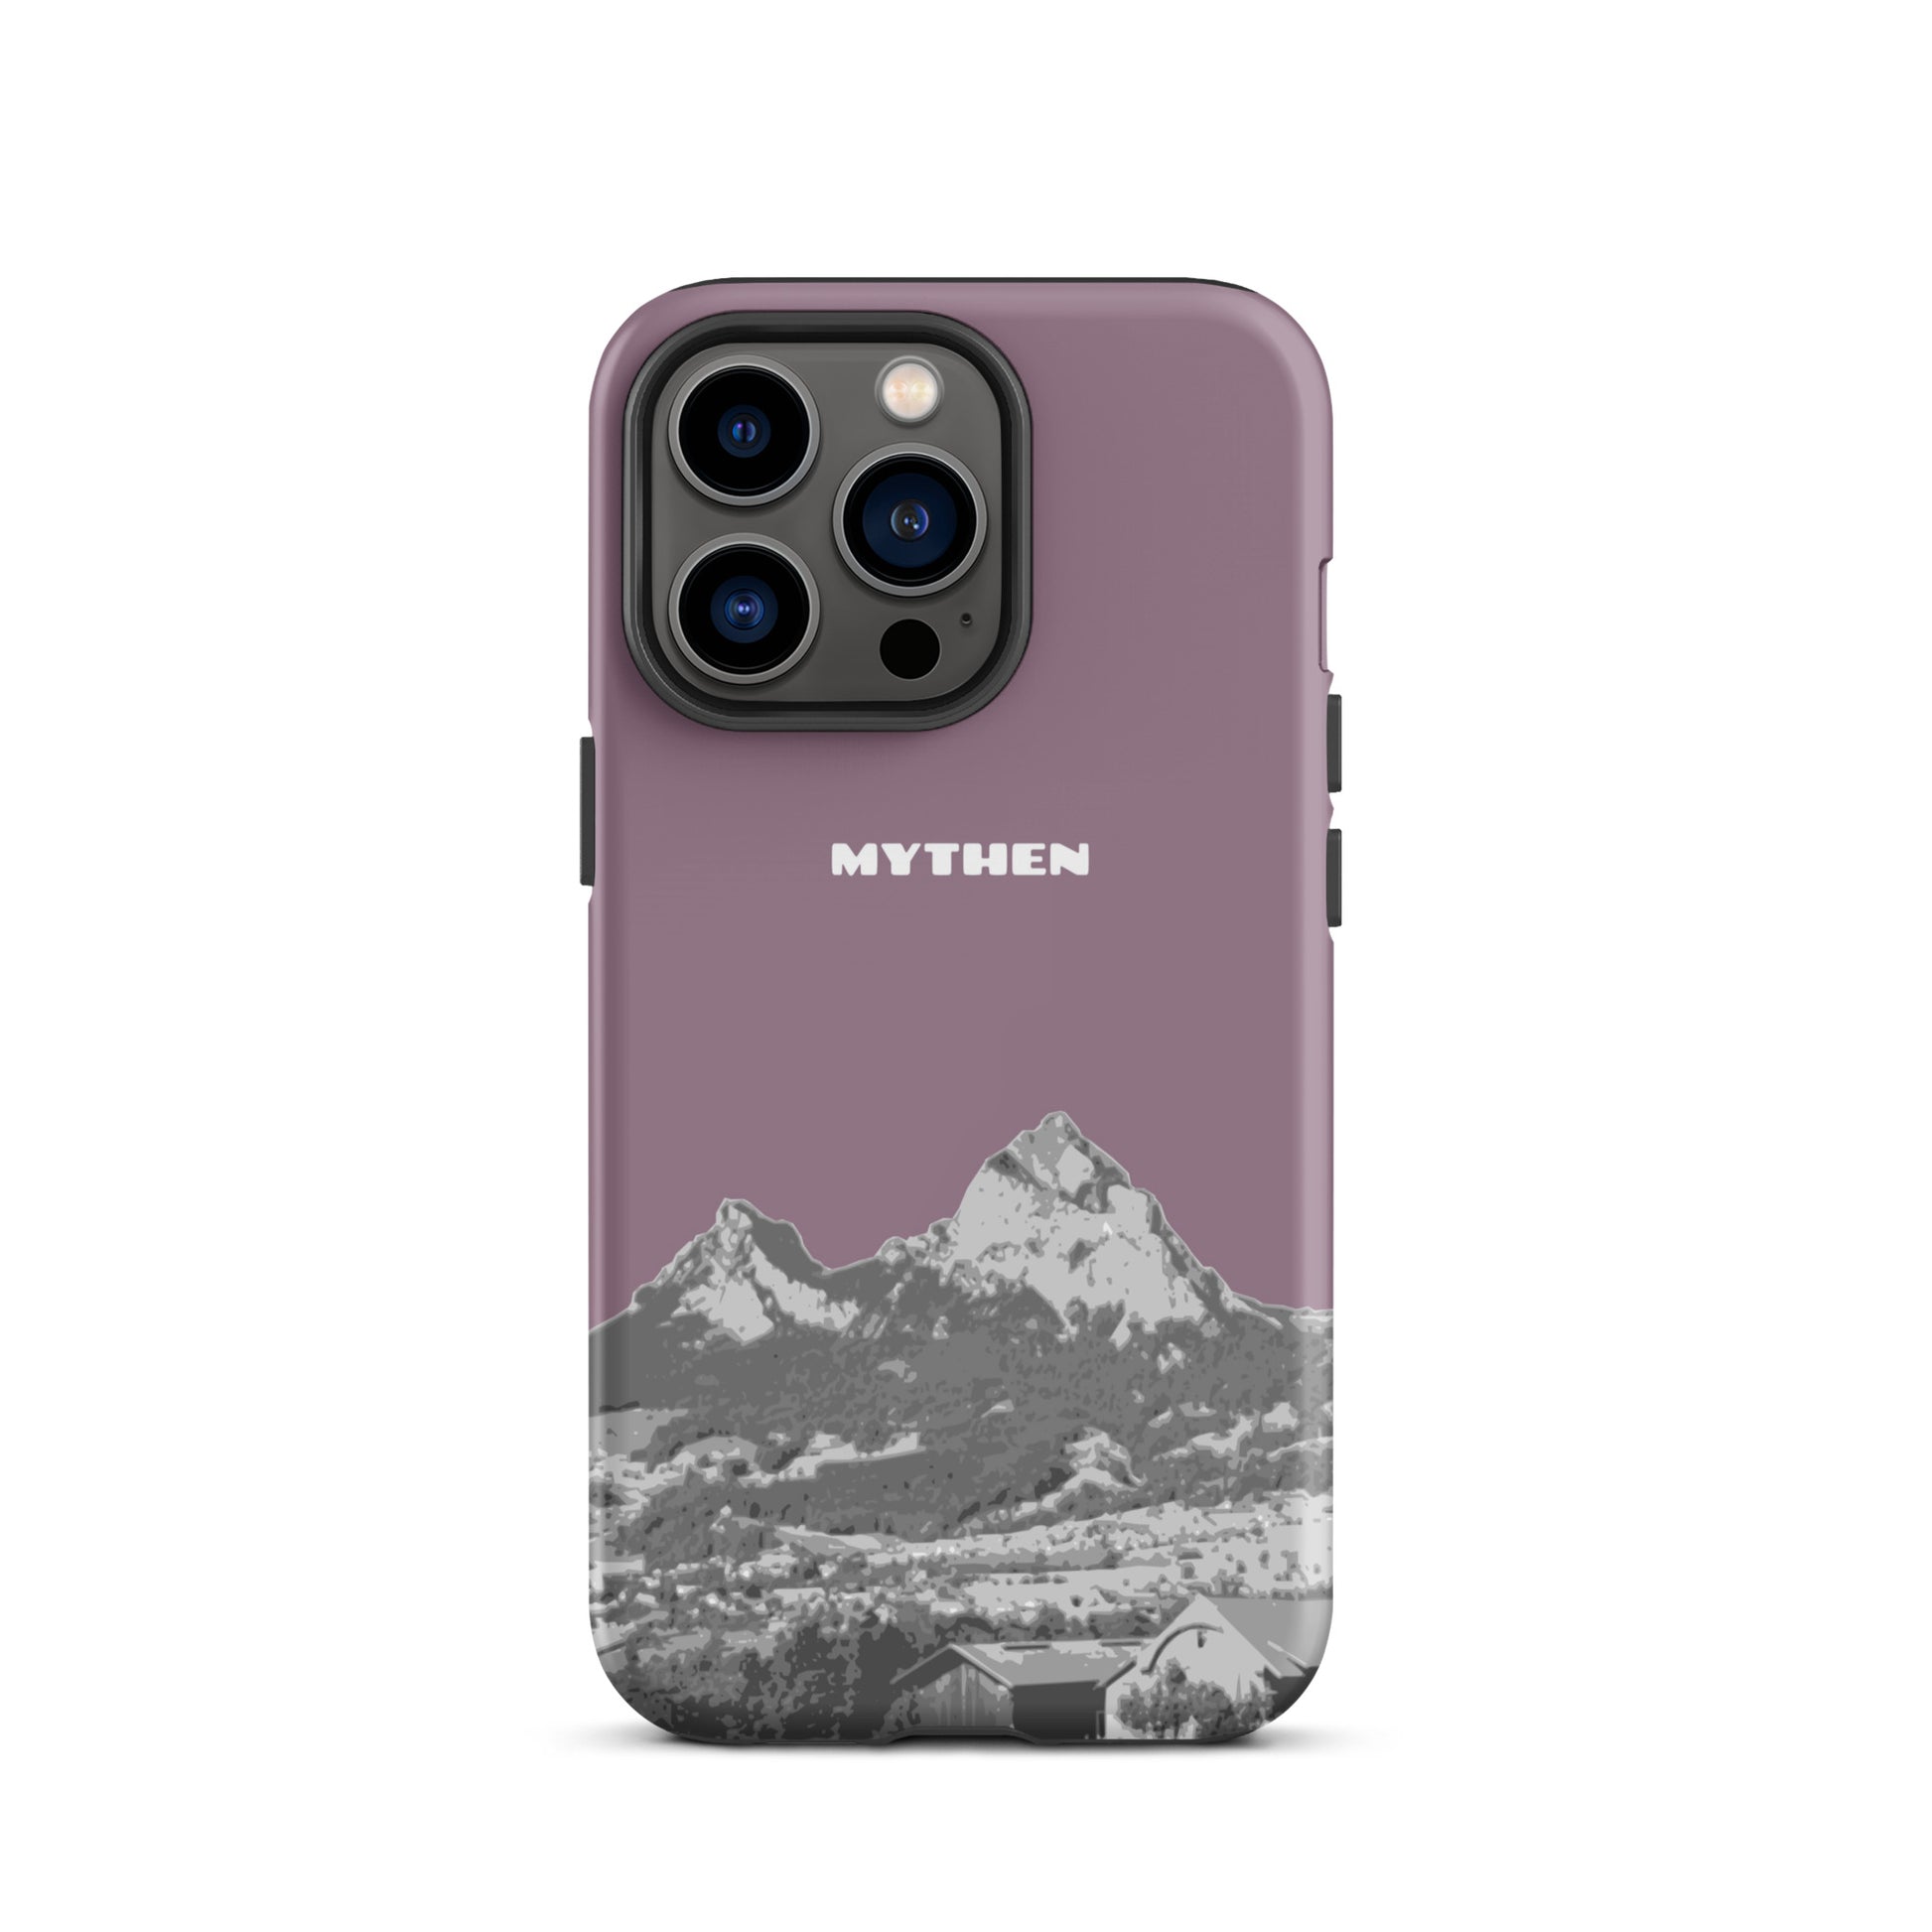 Hülle für das iPhone 13 Pro von Apple in der Farbe Pastellviolett, die den Grossen Mythen und den Kleinen Mythen bei Schwyz zeigt. 